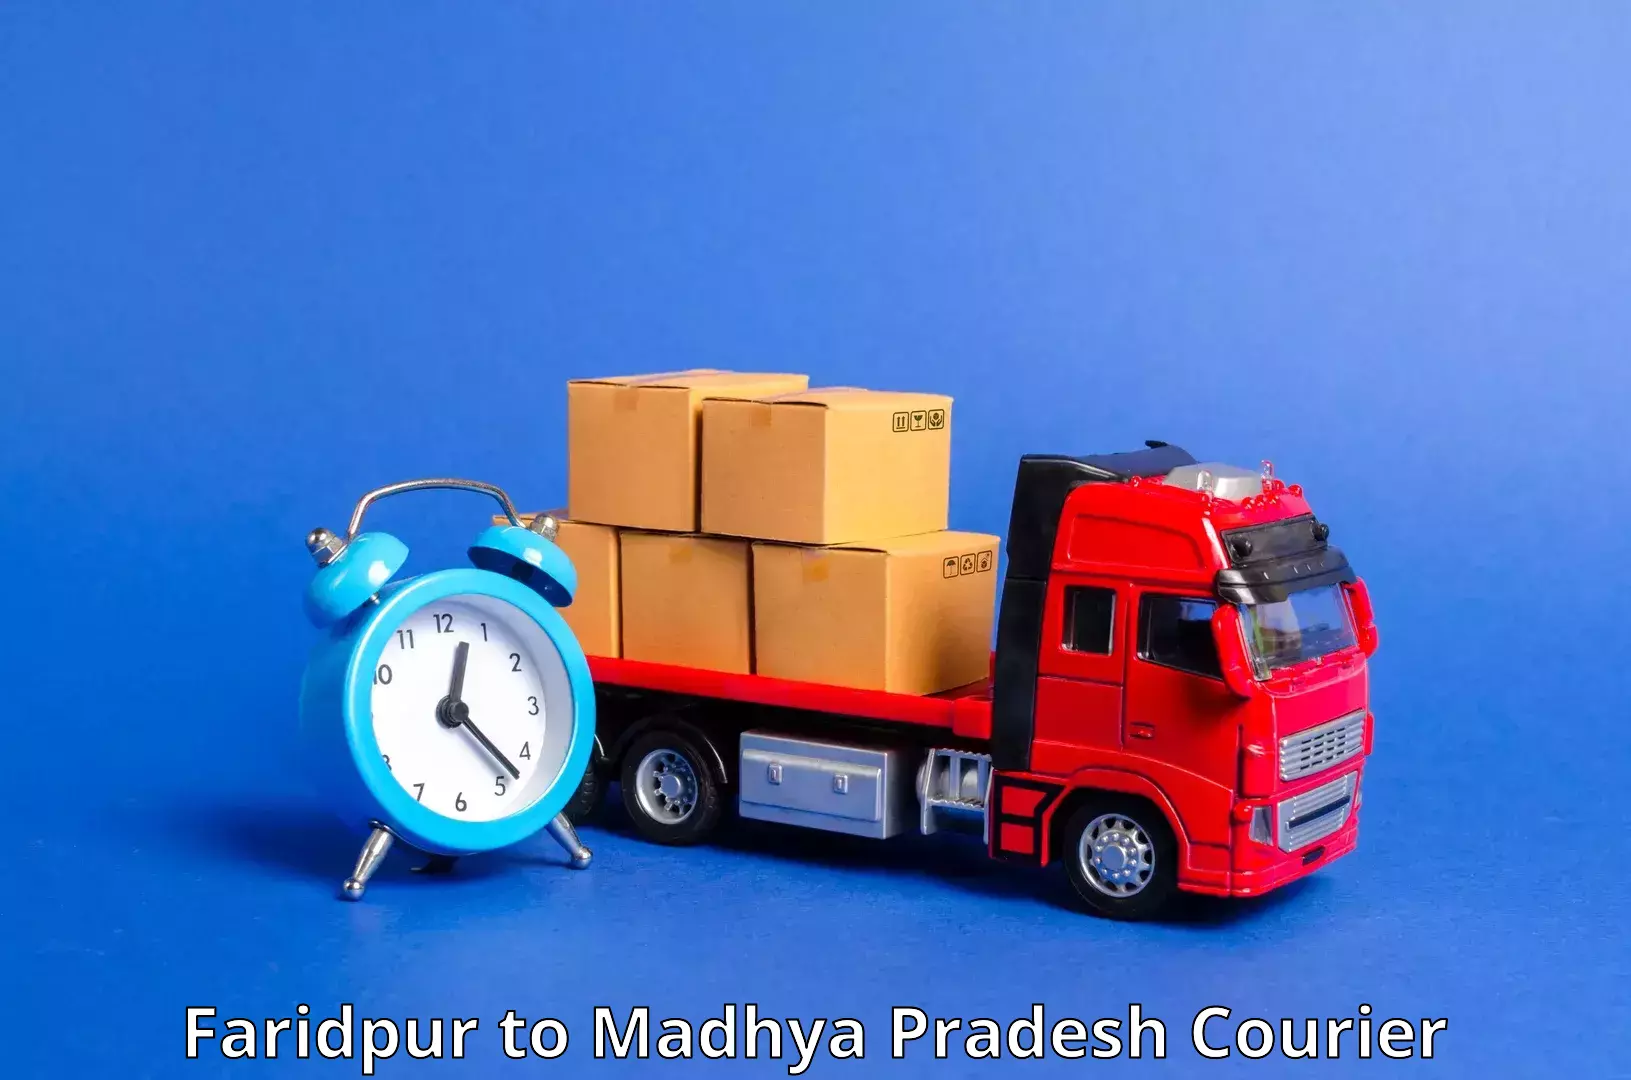 Courier service comparison Faridpur to Jhabua